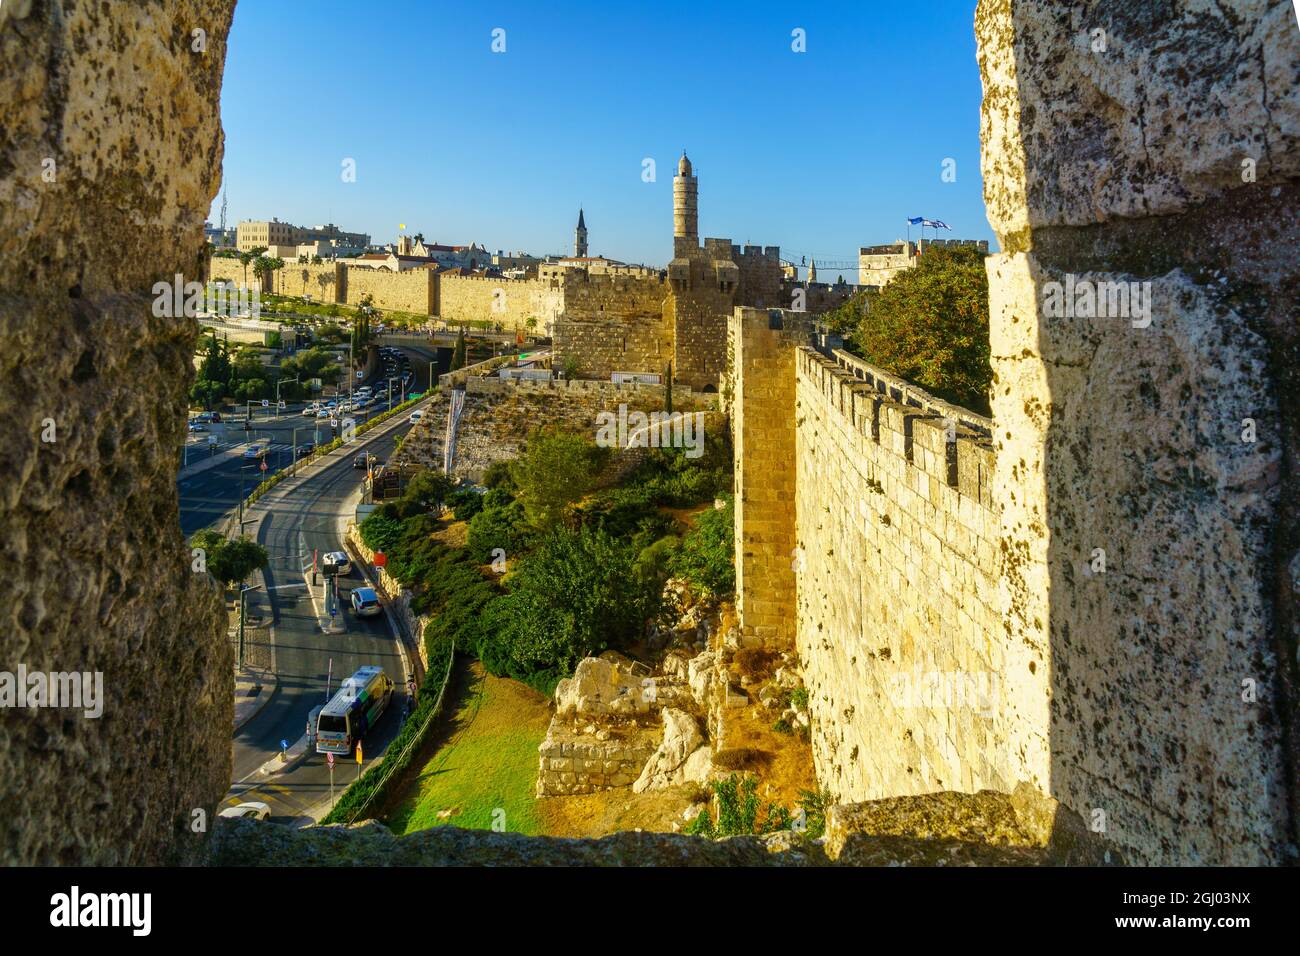 Jerusalén, Israel - 29 de agosto de 2021: Vista de las antiguas murallas de la ciudad, con la Torre de David (Ciudadela) y otros monumentos, en Jerusalén, Israel Foto de stock